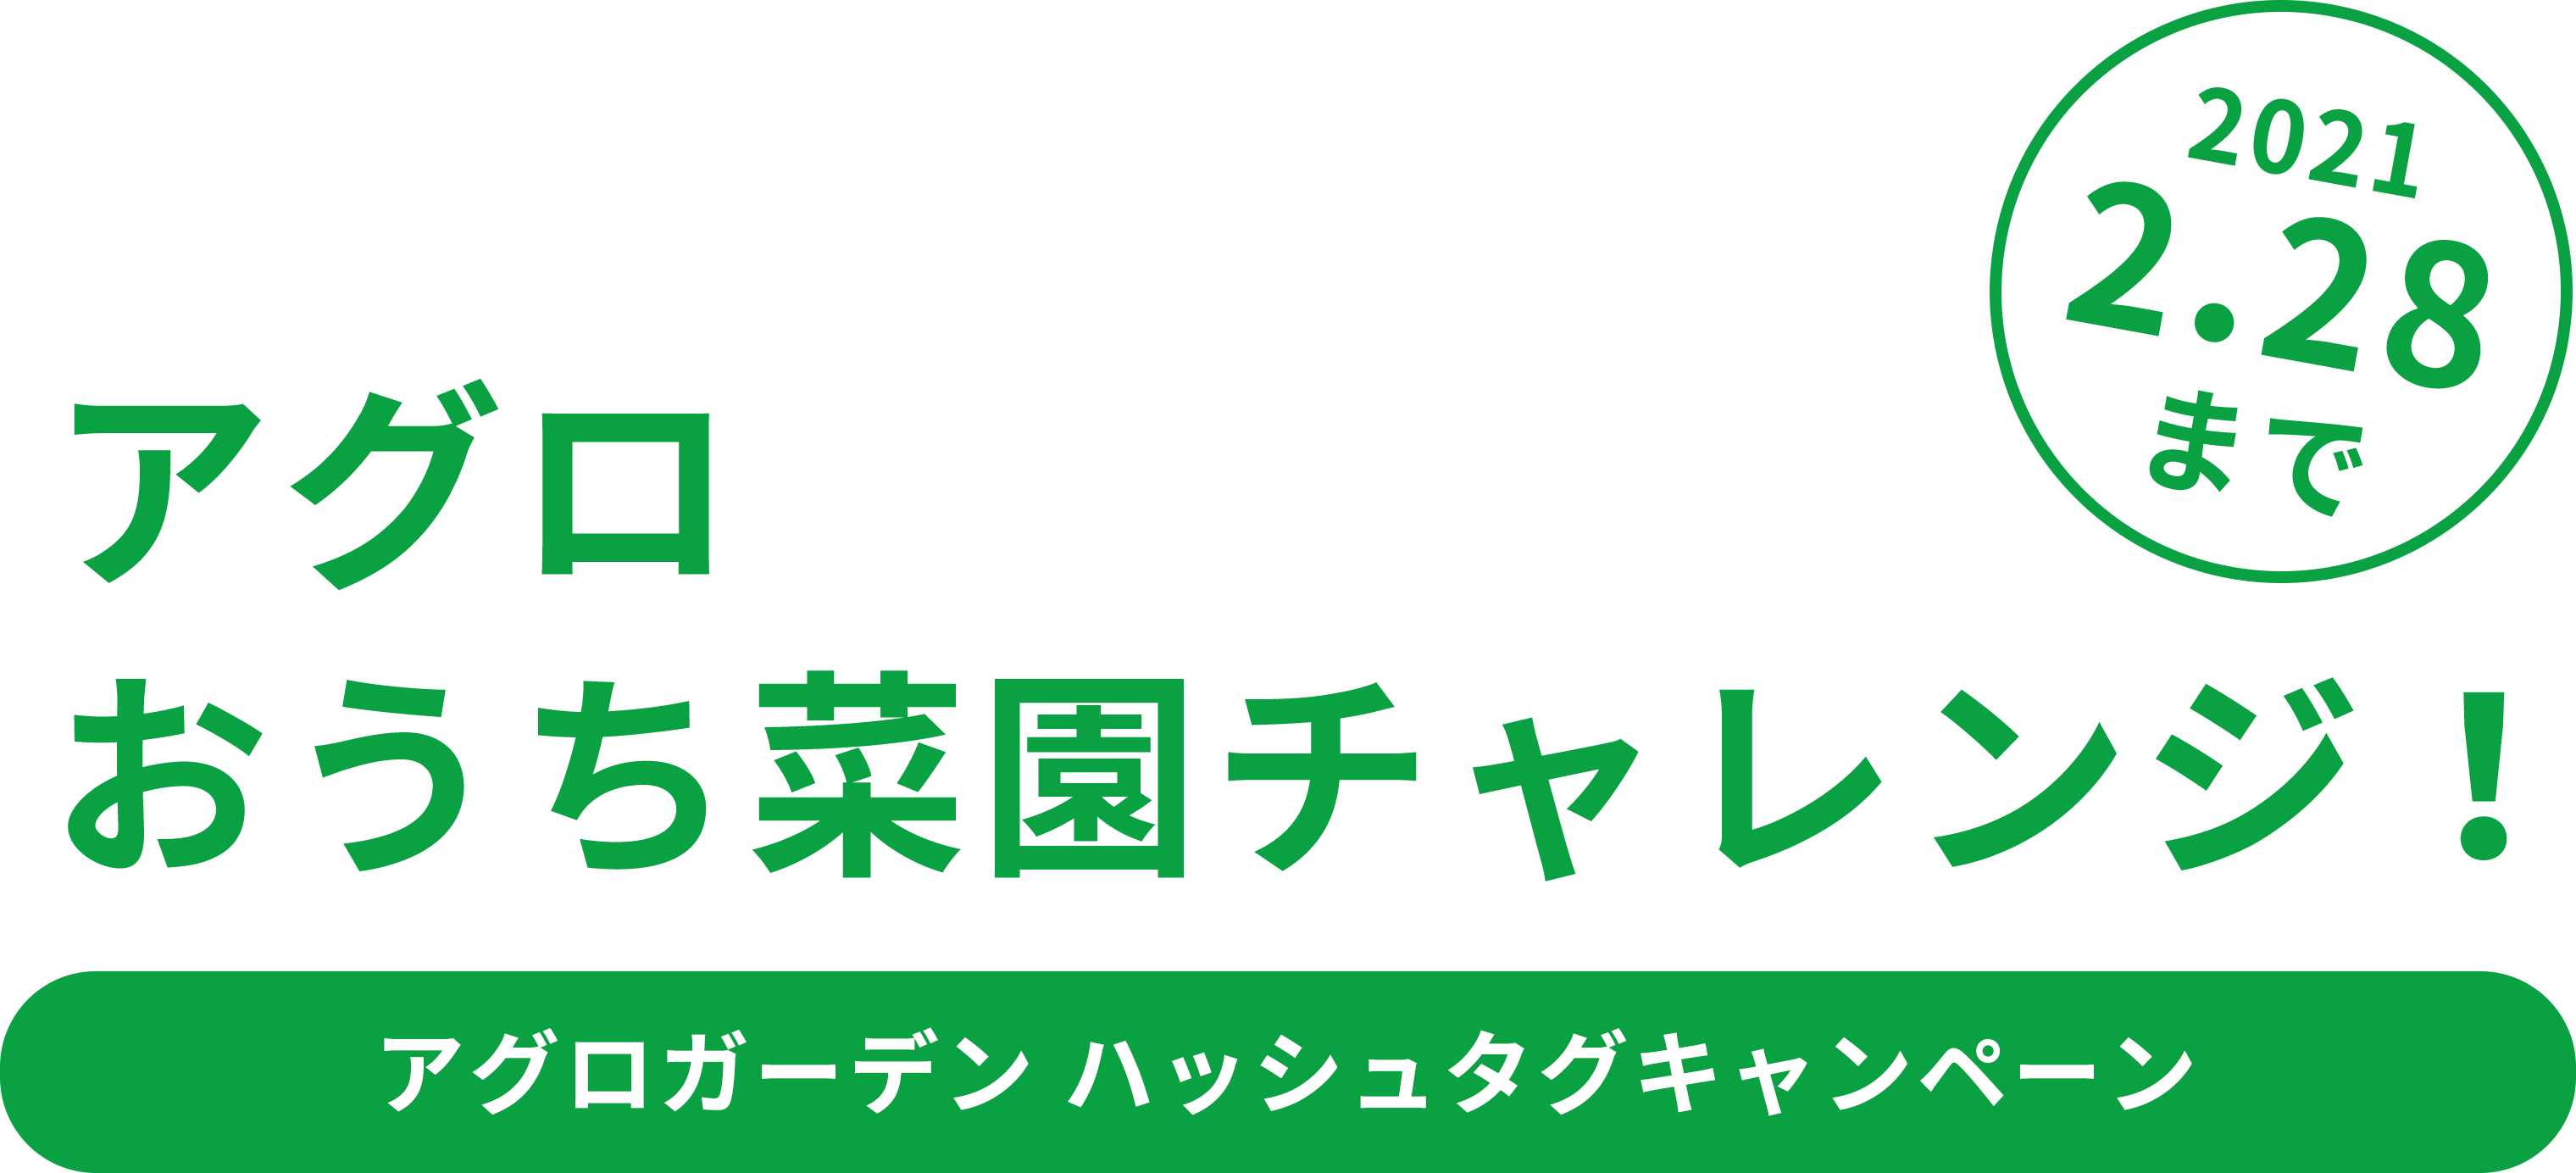 アグロおうち菜園チャレンジ! #アグロガーデニング ハッシュタグキャンペーン